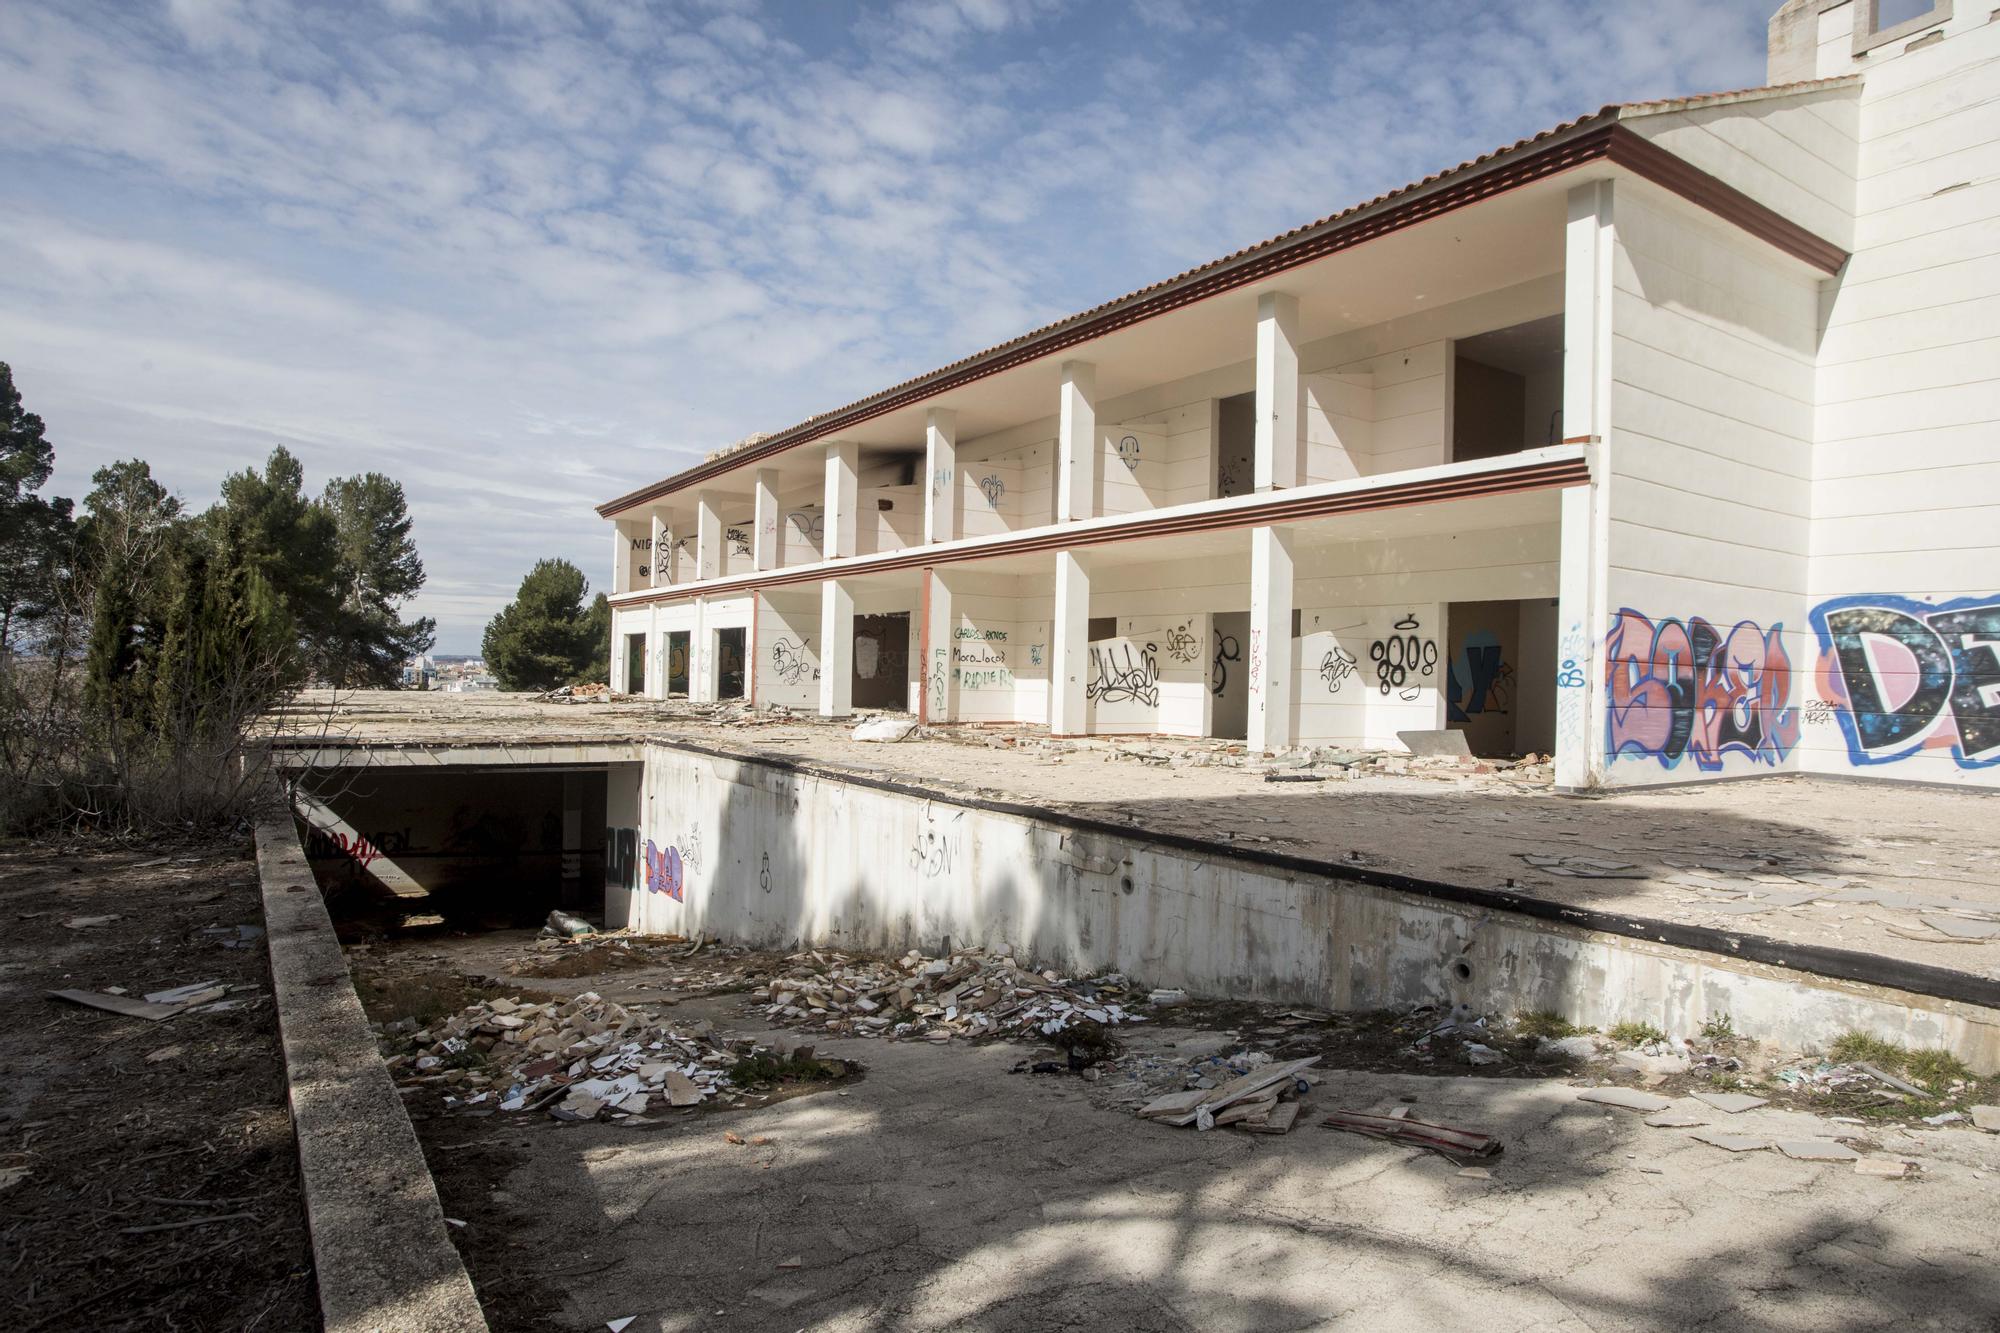 El Hotel Paraje San José de Requena: del lujo al saqueo